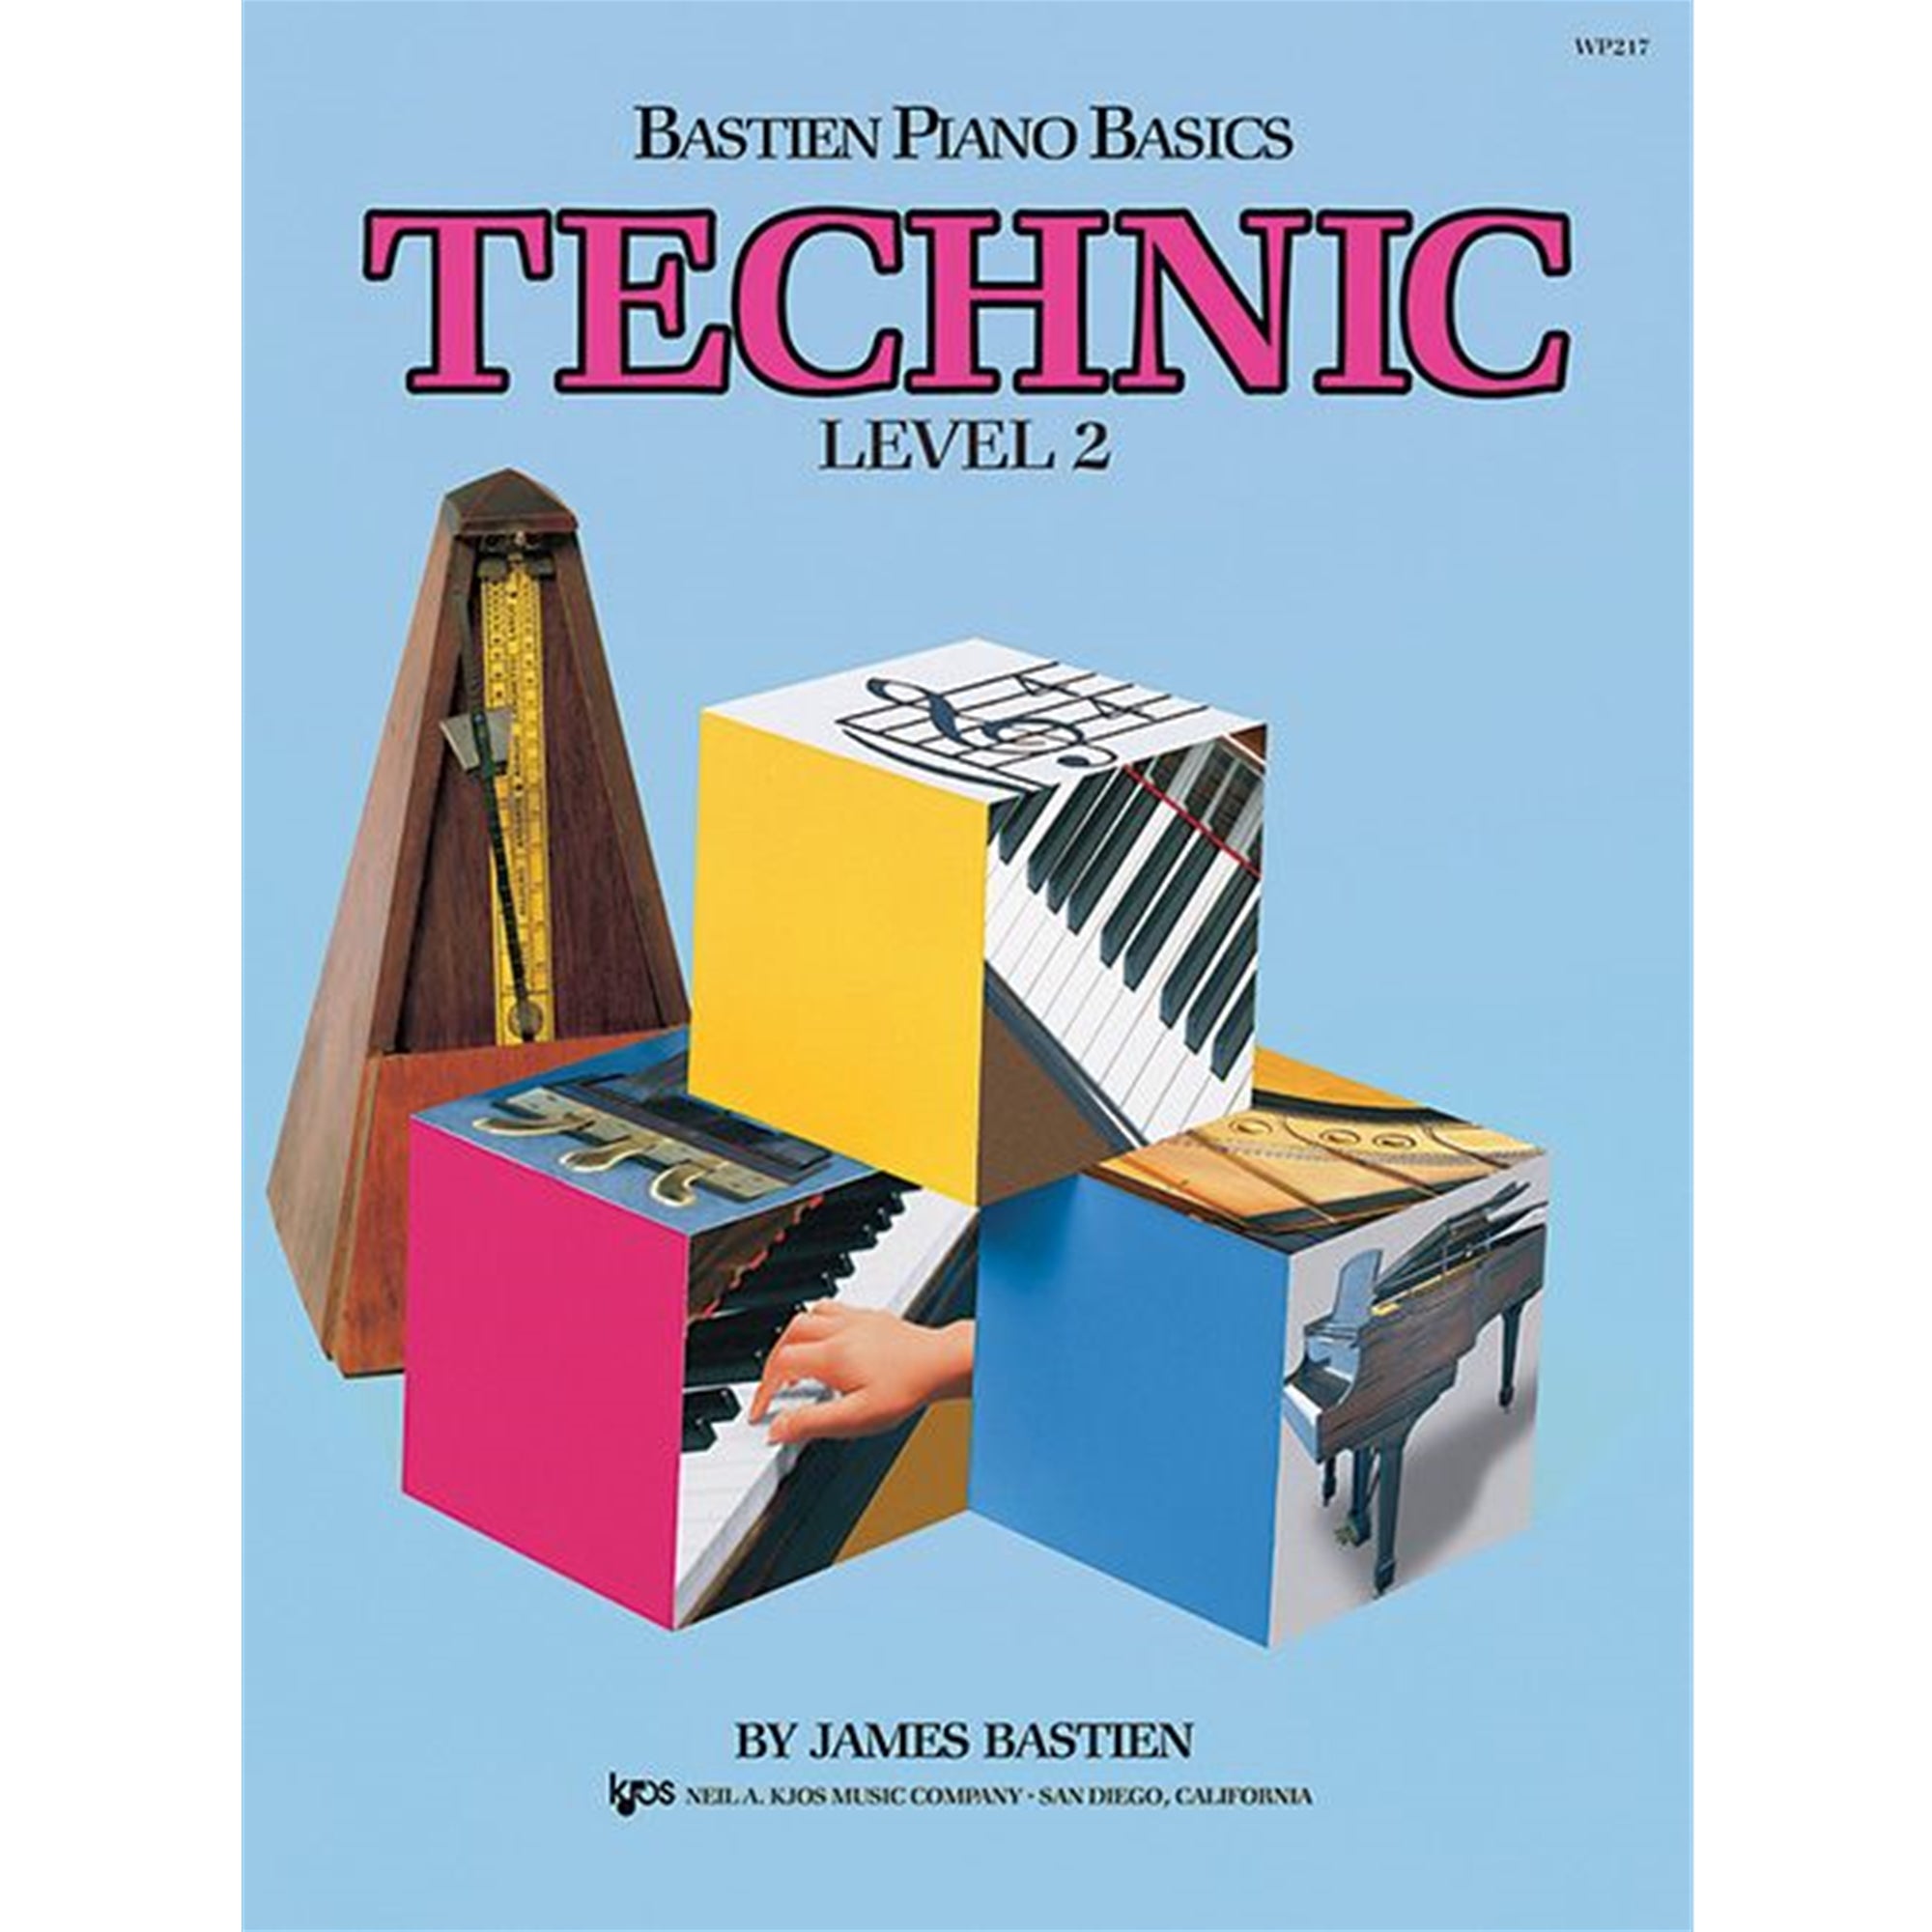 KJOS WP217 Bastien Piano Basics Technic Level 2